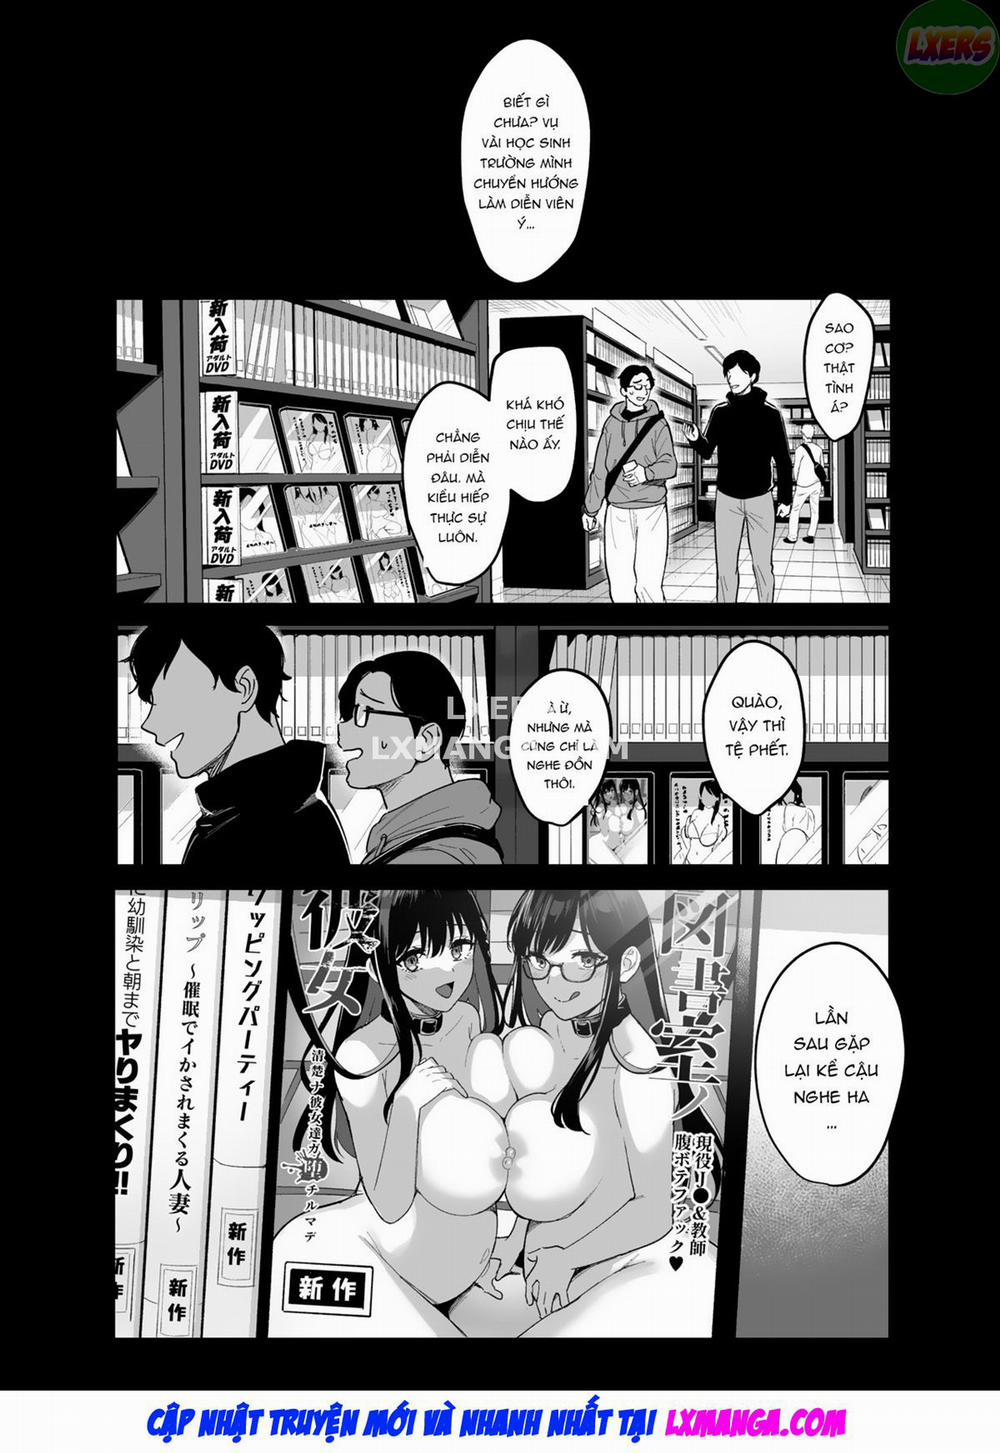 Toshoshitsu no Kanojo Chương 6 Onna Kyoushi ga Ochiru made Trang 48